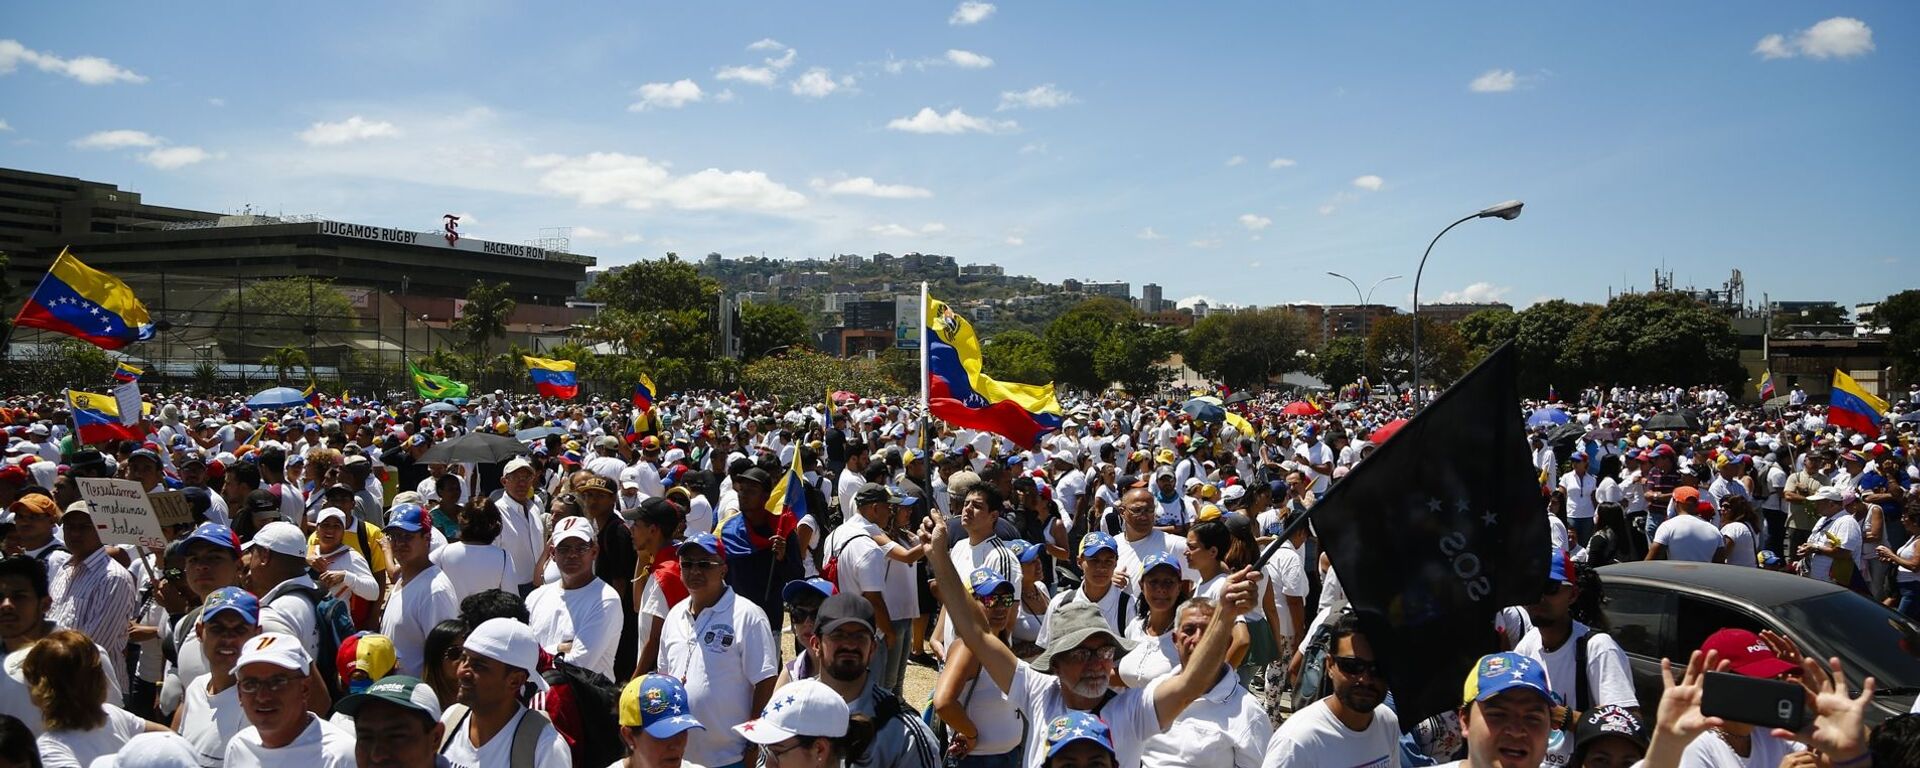 مظاهرات المعارضة الفنزويلية (خوان غوايدو) في كاراكاس، فنزويلا فبراير/ شباط 2019  - سبوتنيك عربي, 1920, 26.11.2022